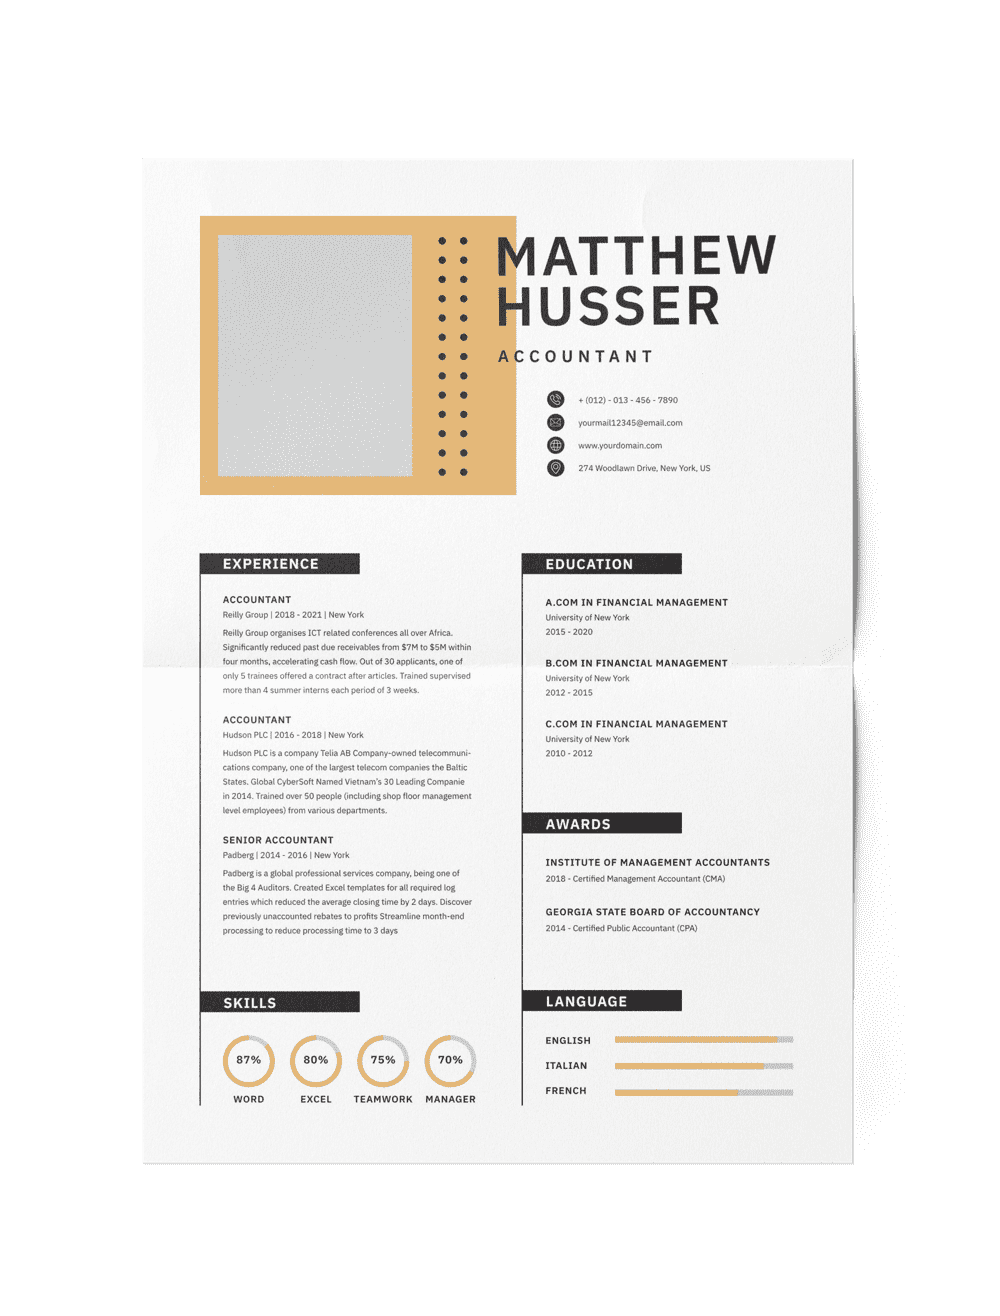 CV #23 Matthew Husser